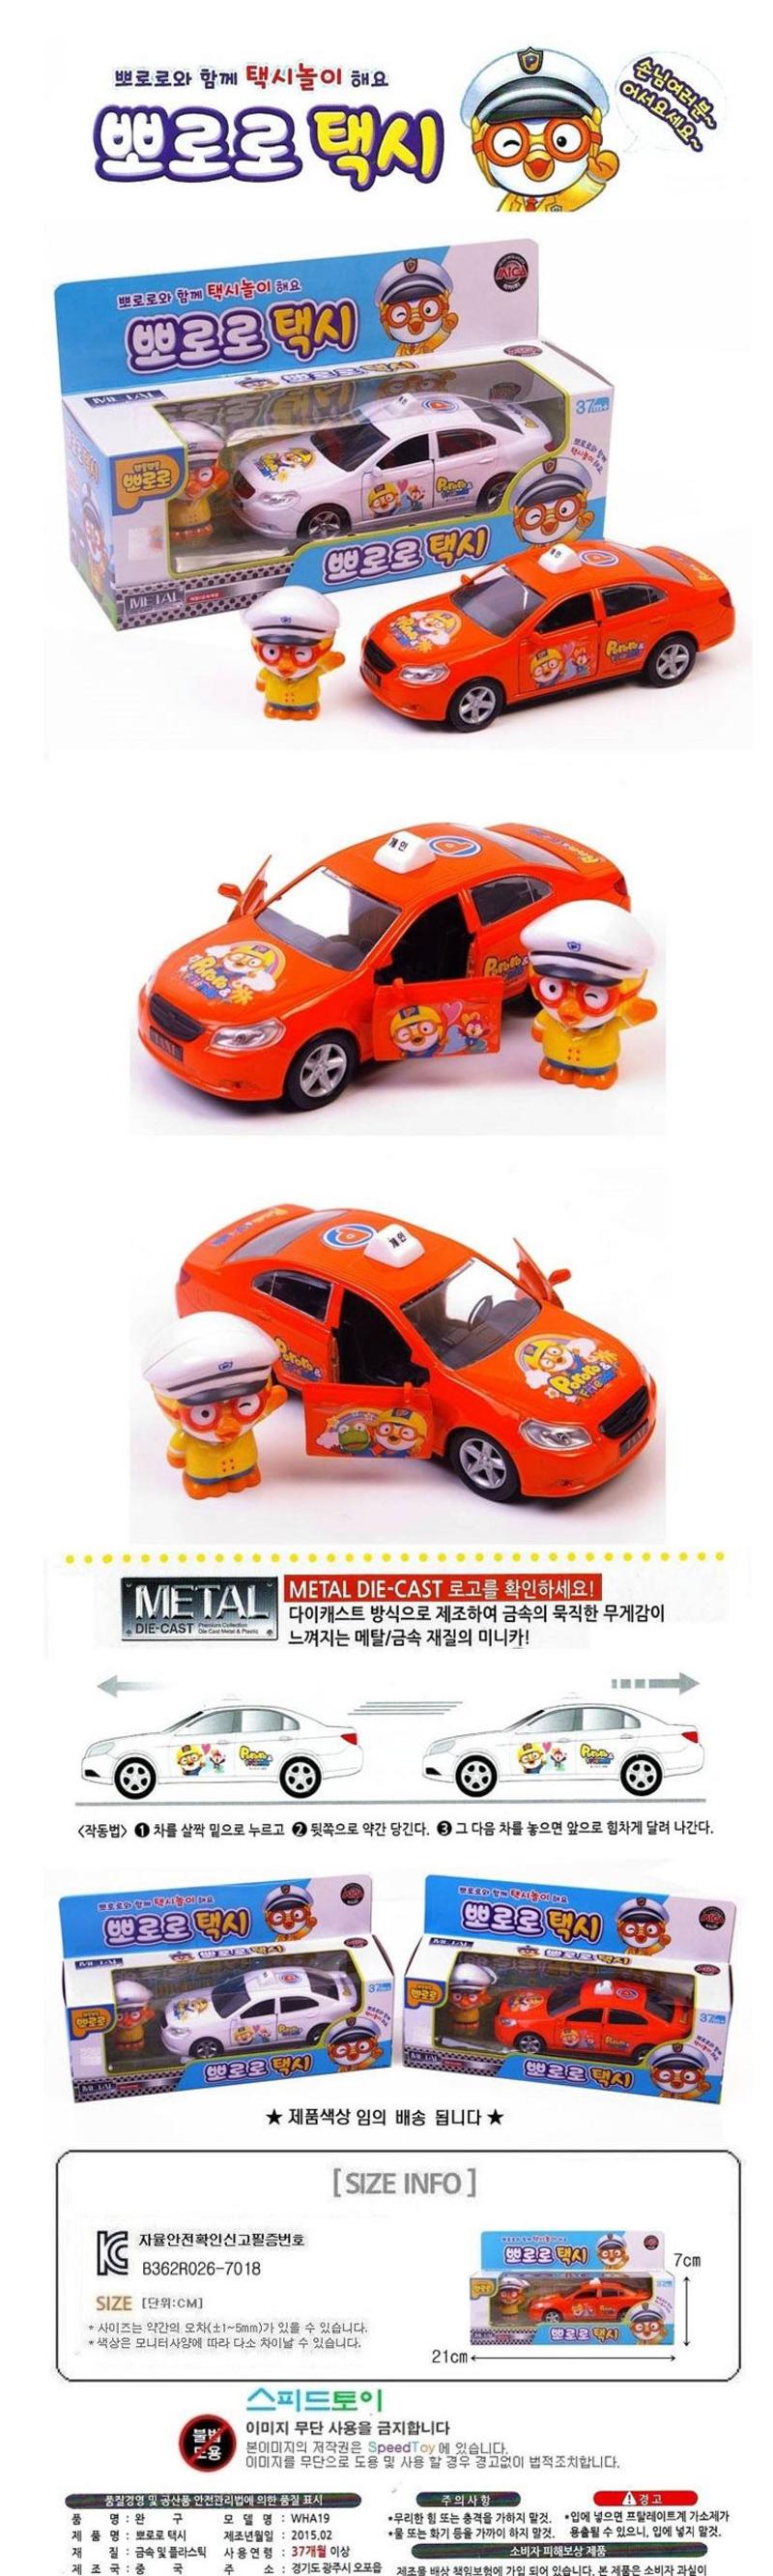 韩国进口宝露露正品玩具出租车-小企鹅汽车玩具正品 211616